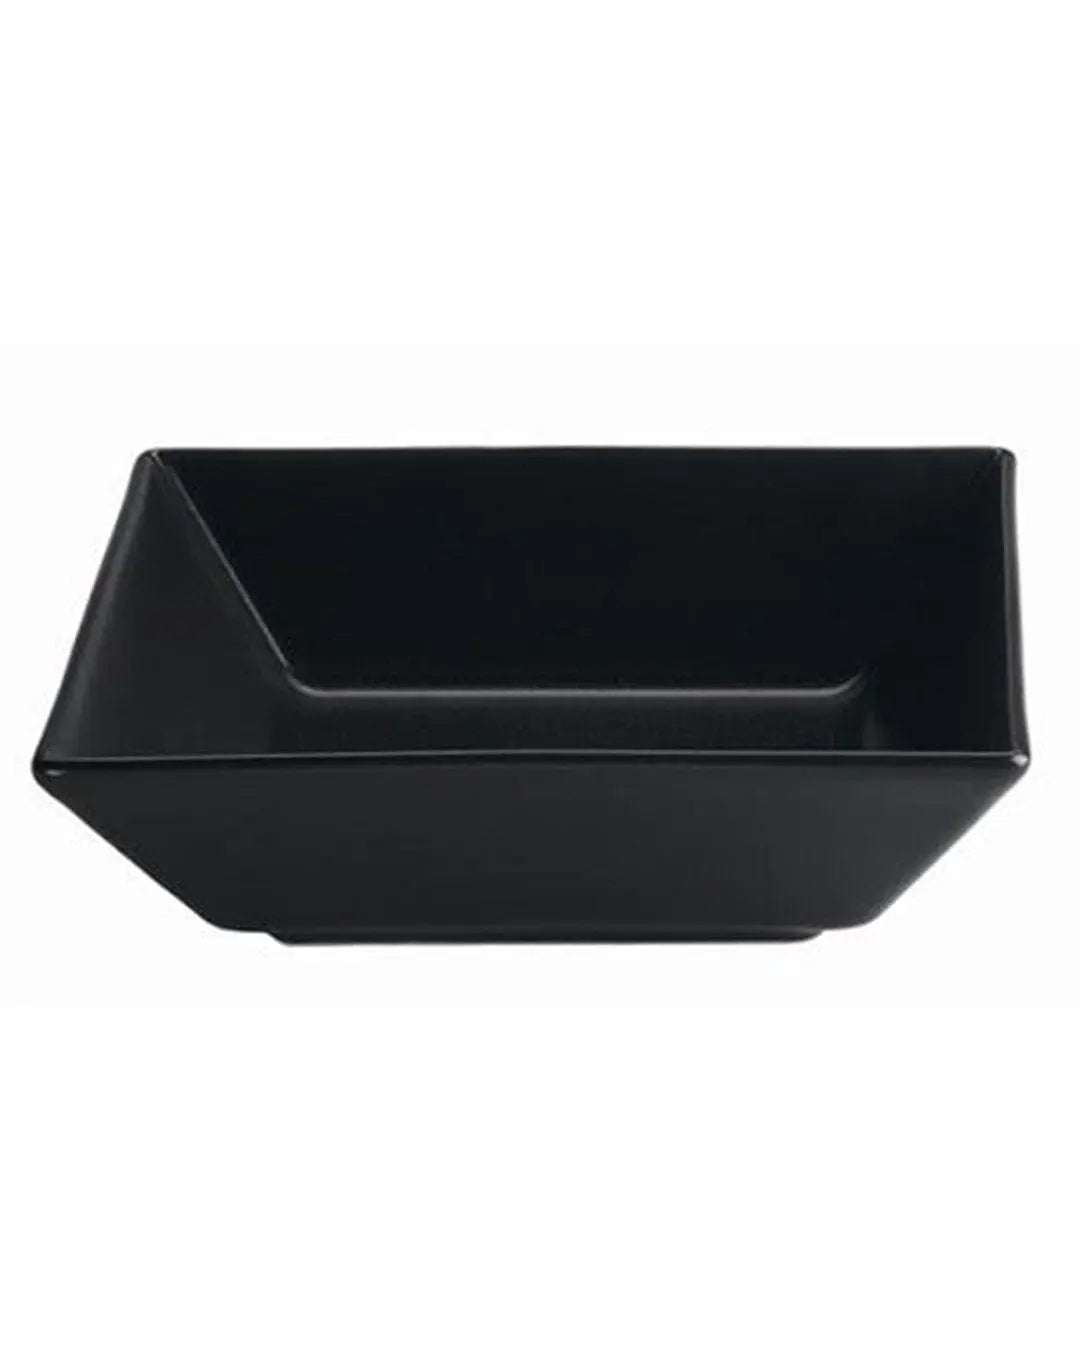 Square Black Plastic Bowls 18cm Pack Size 10 Partyware 5033298005759